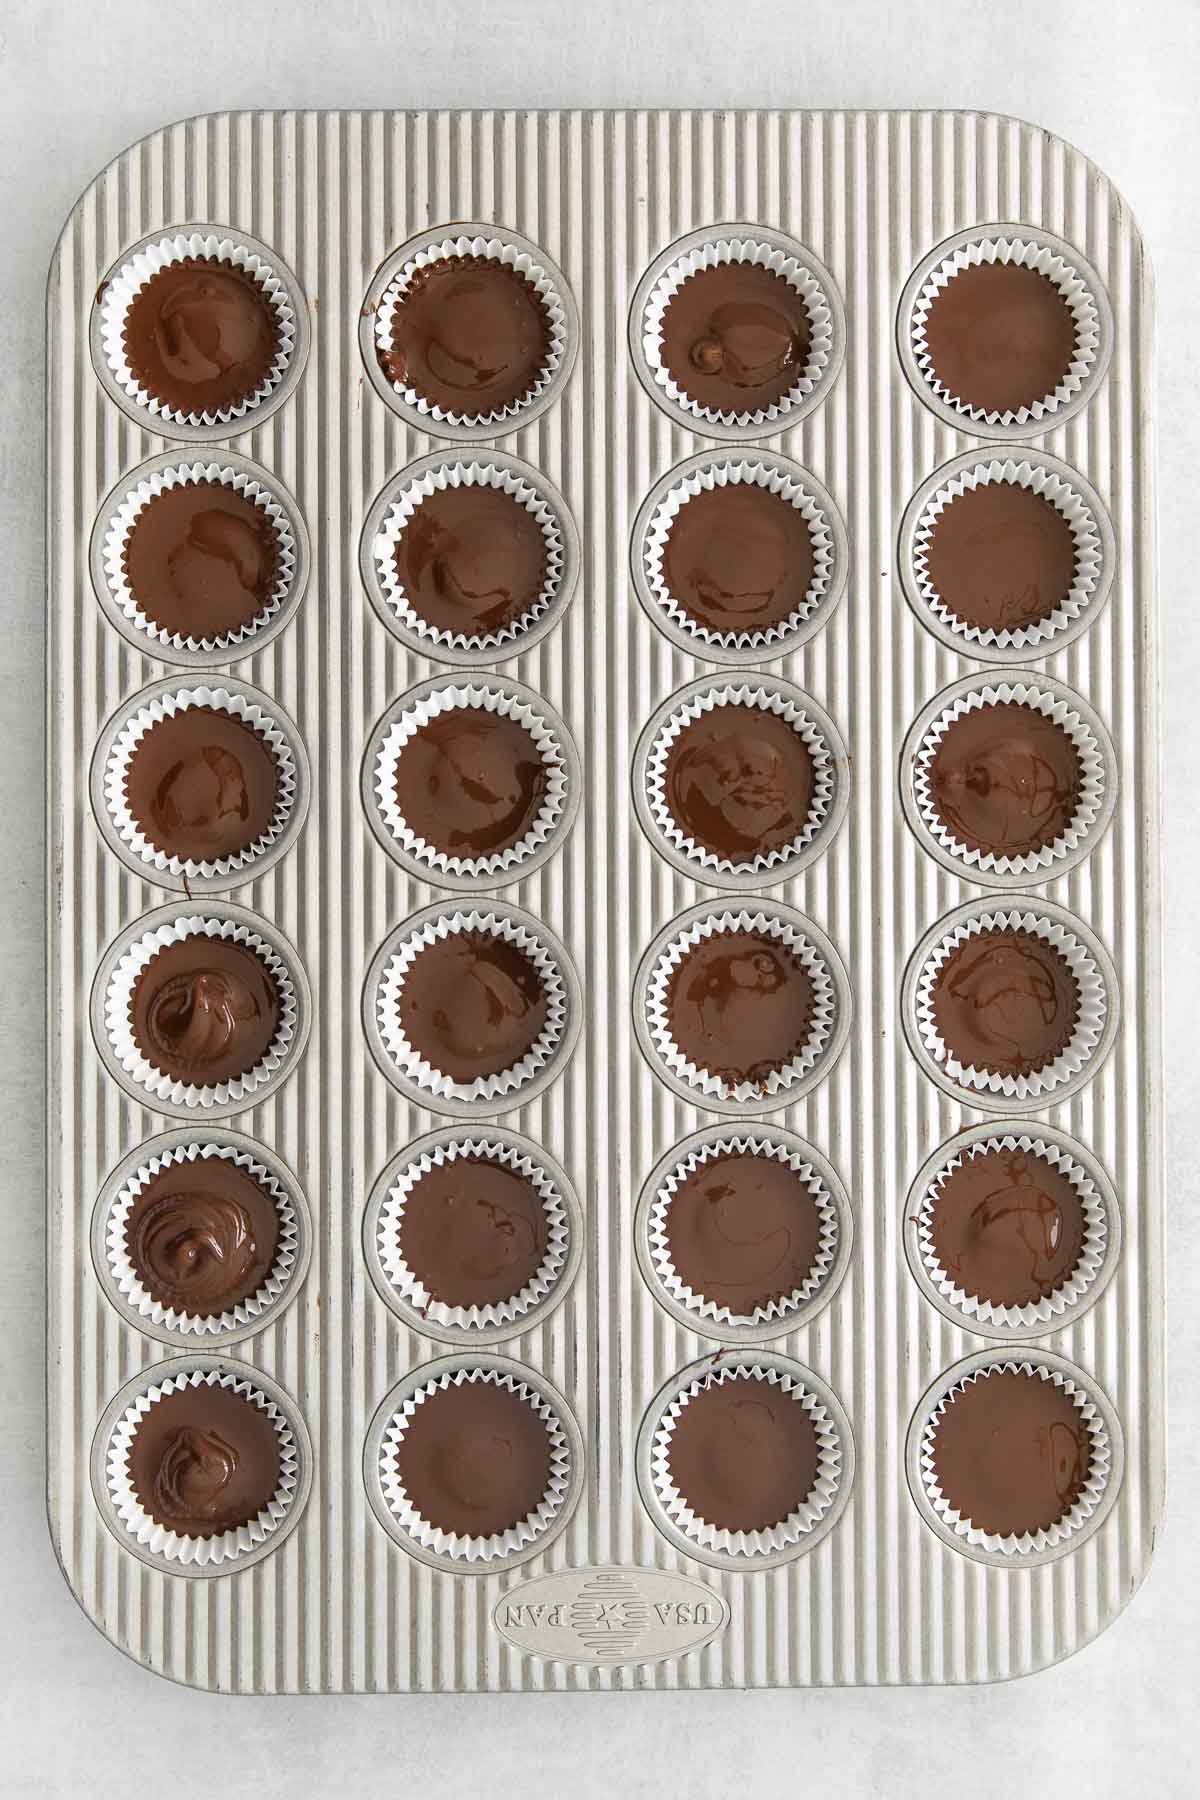 24 chocolate peanut butter cups in a mini muffin tin.